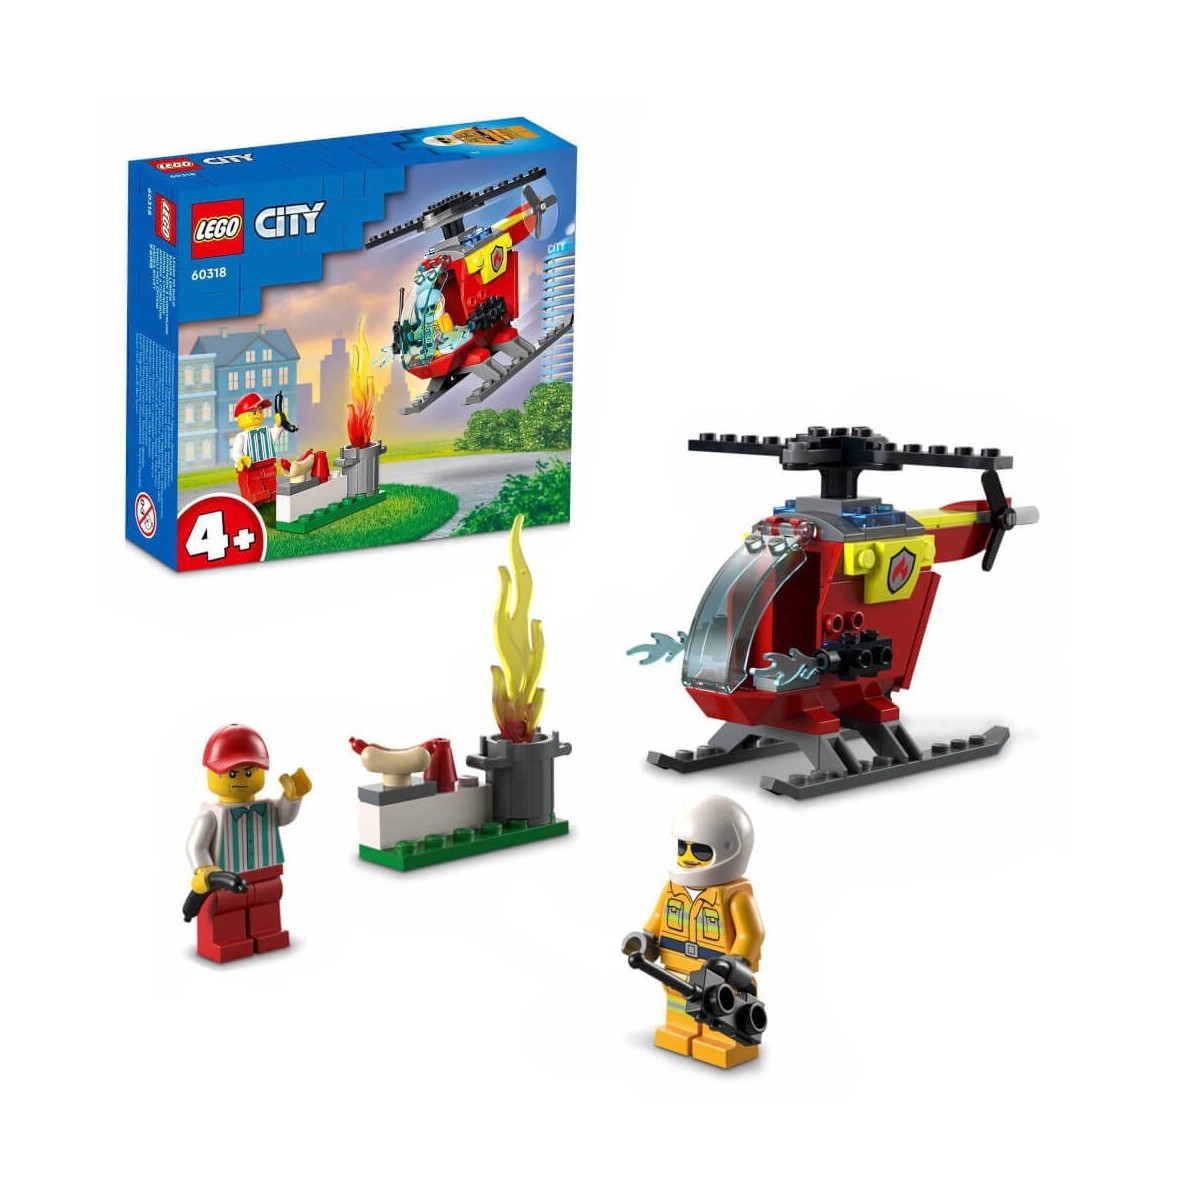 LEGO City 60318   Feuerwehrhubschrauber